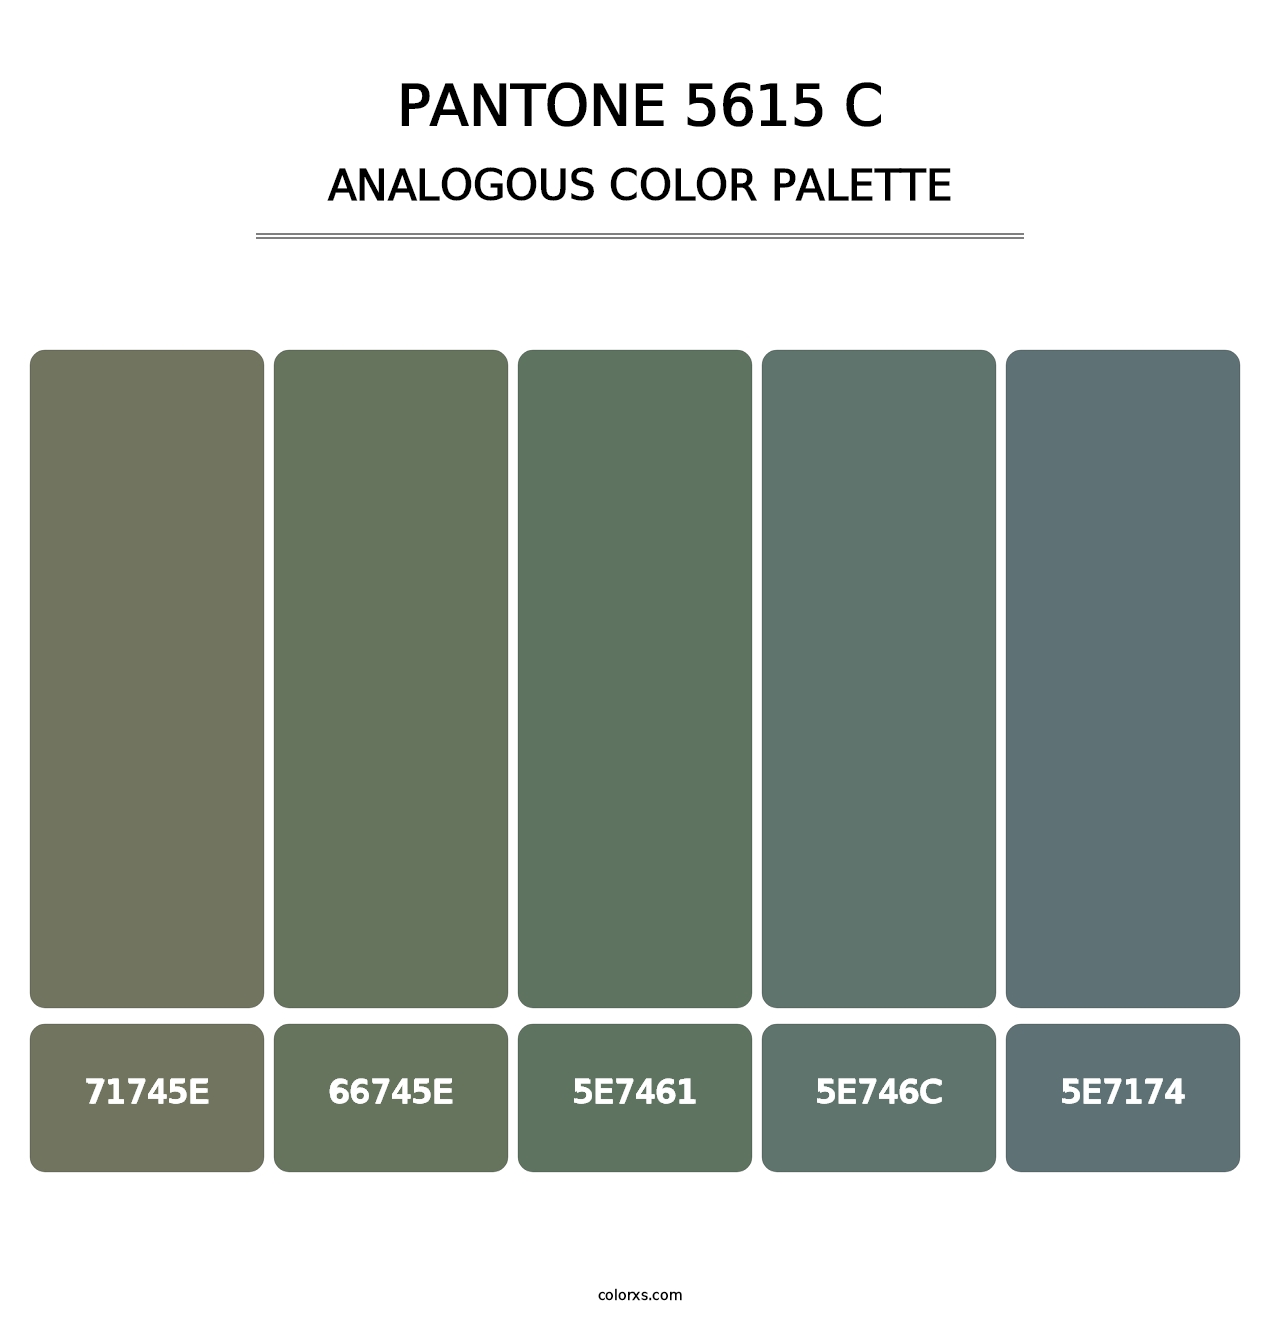 PANTONE 5615 C - Analogous Color Palette